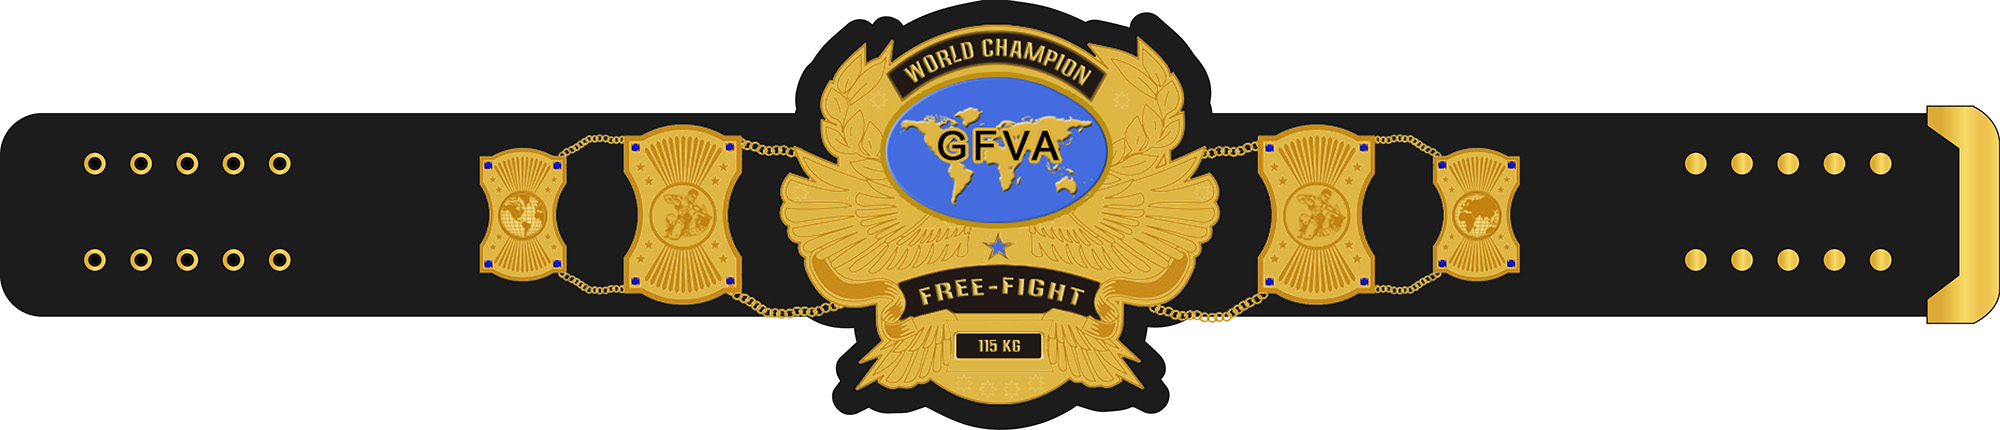 GFVA World Champion Grtel